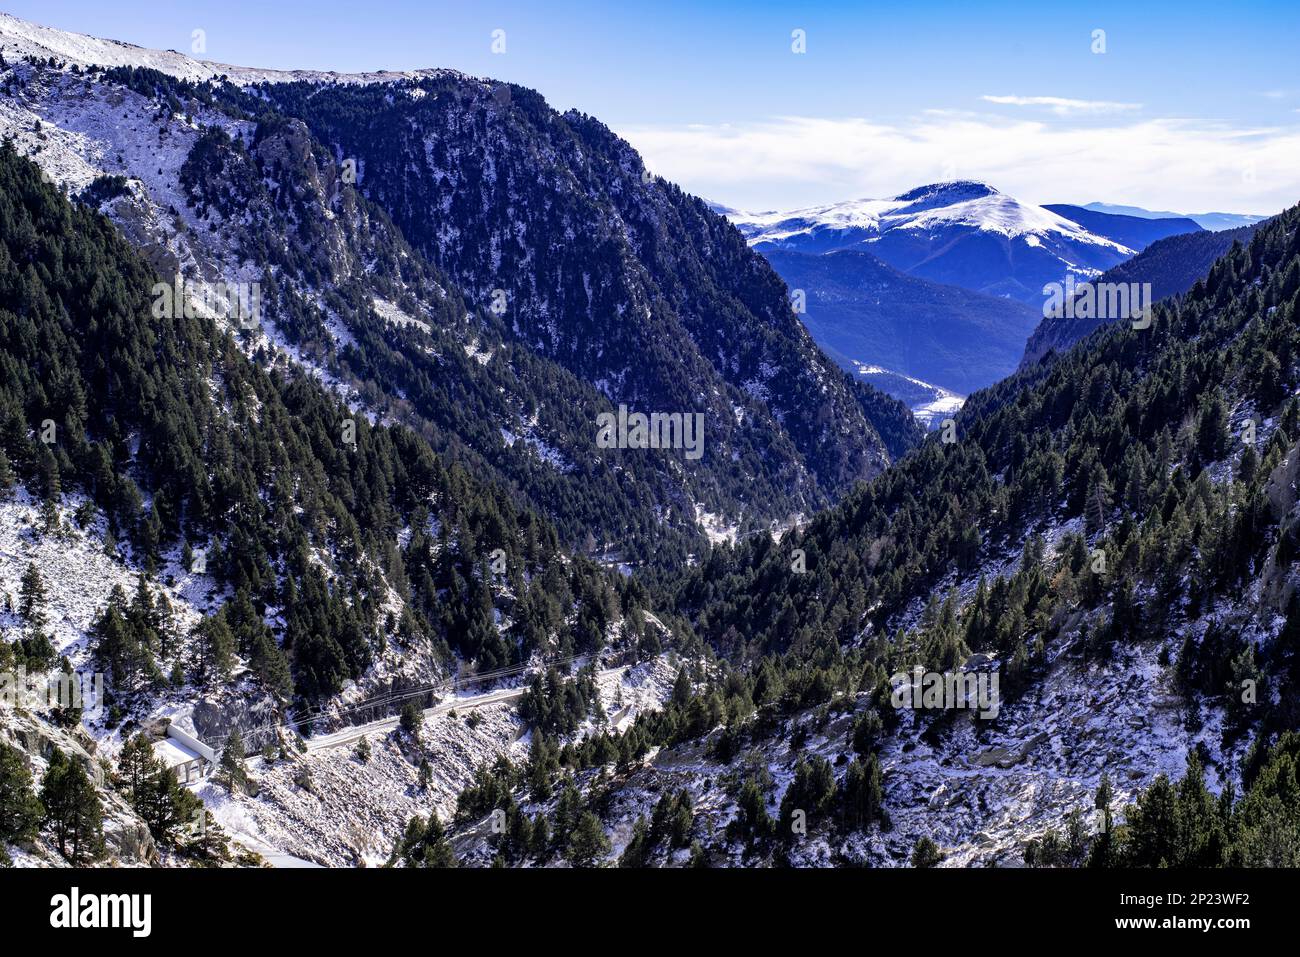 Valley of Nuria,El Ripolles,Girona,Catalonia,Spain,pyrenees mountains. Stock Photo